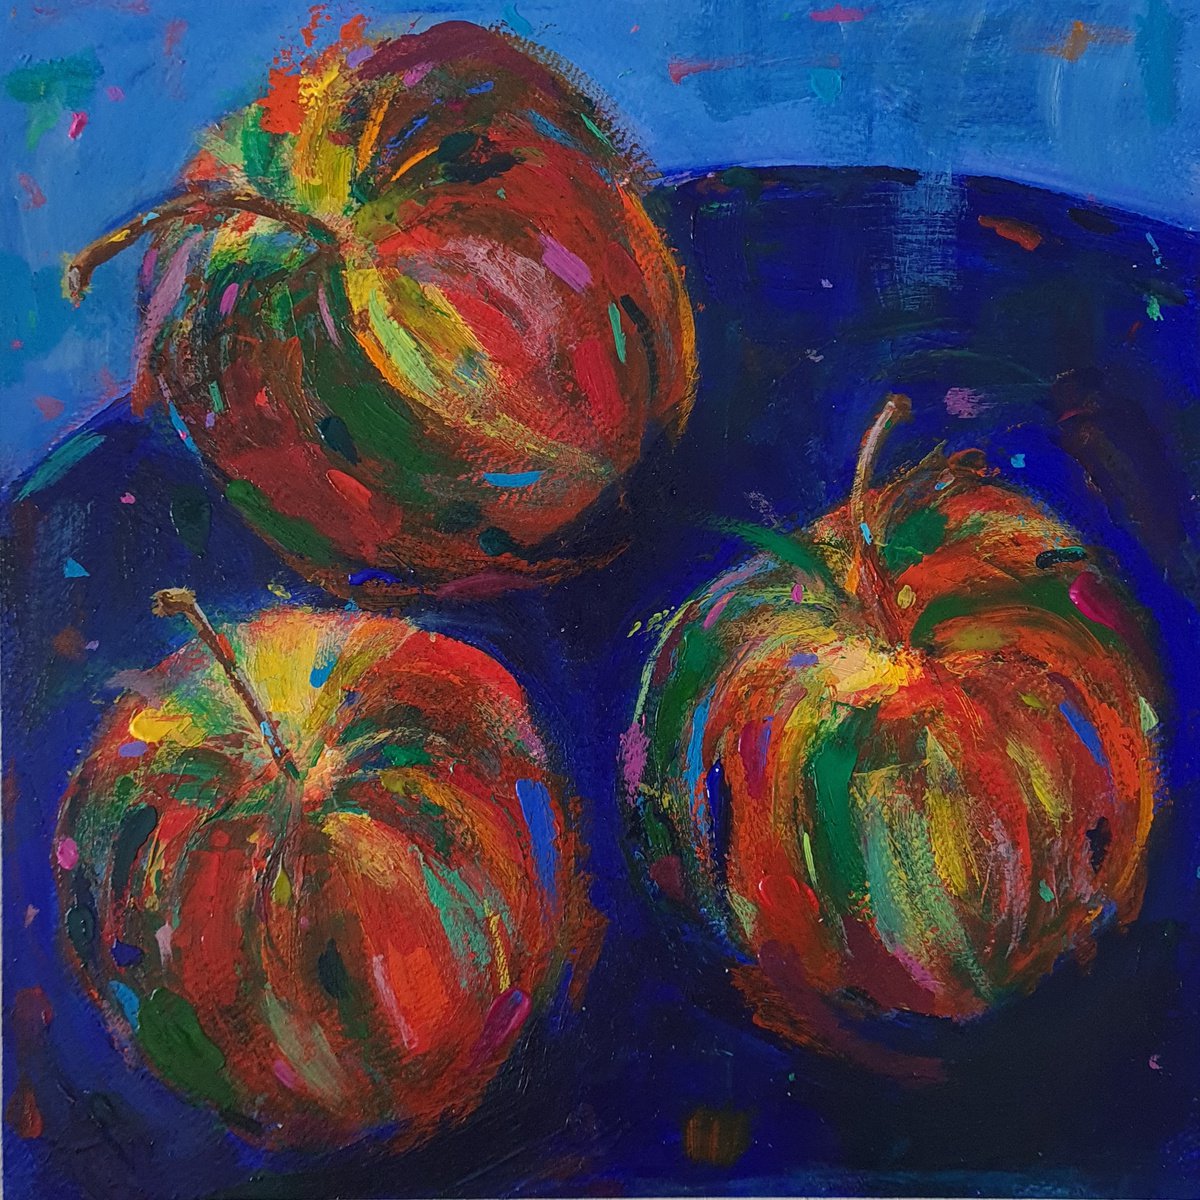 Gala Apples by Dawn Underwood